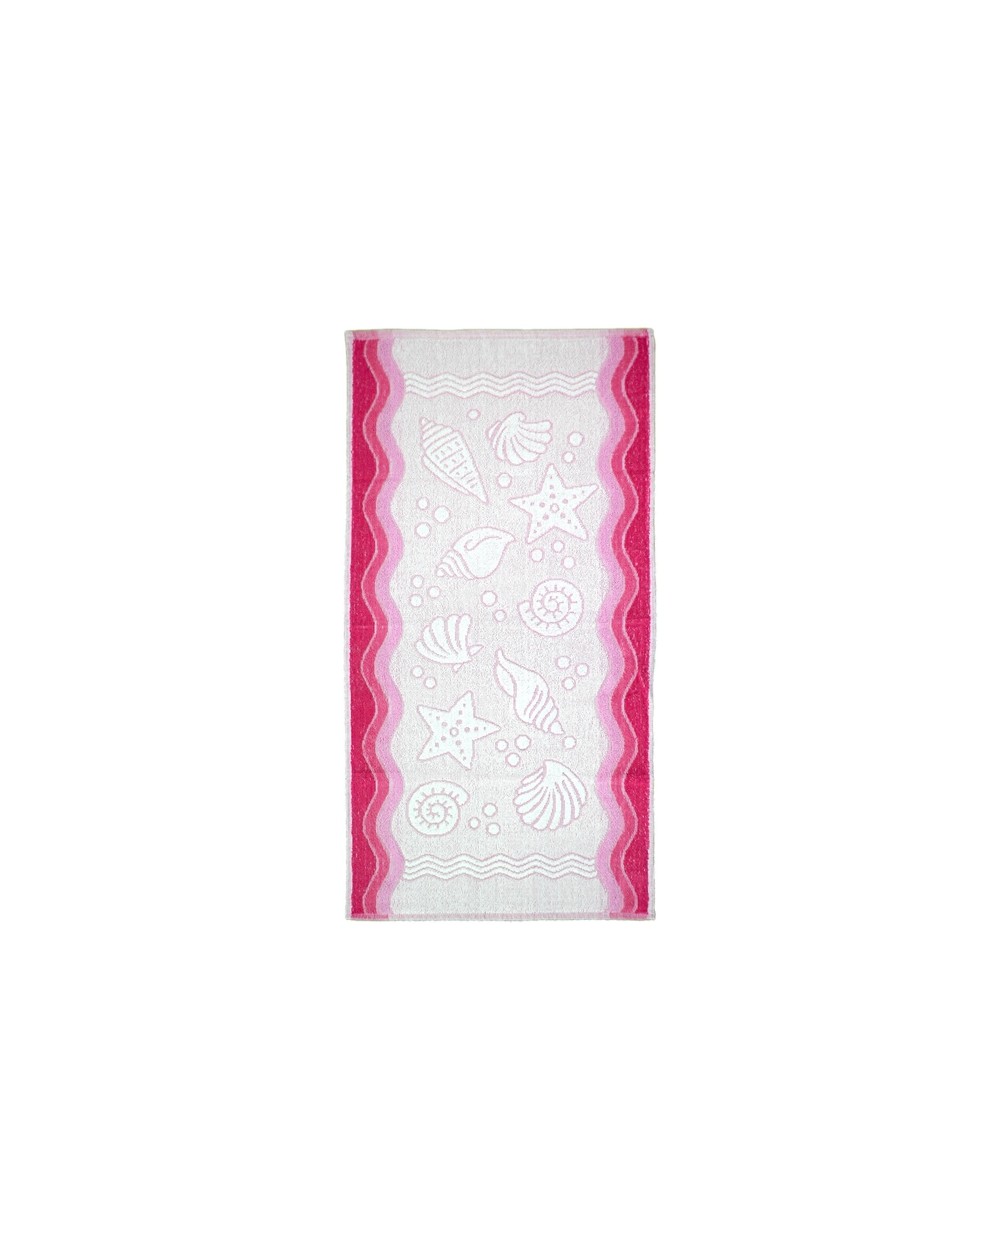 Ręcznik Flora Ocean bawełna 70x140 różowy